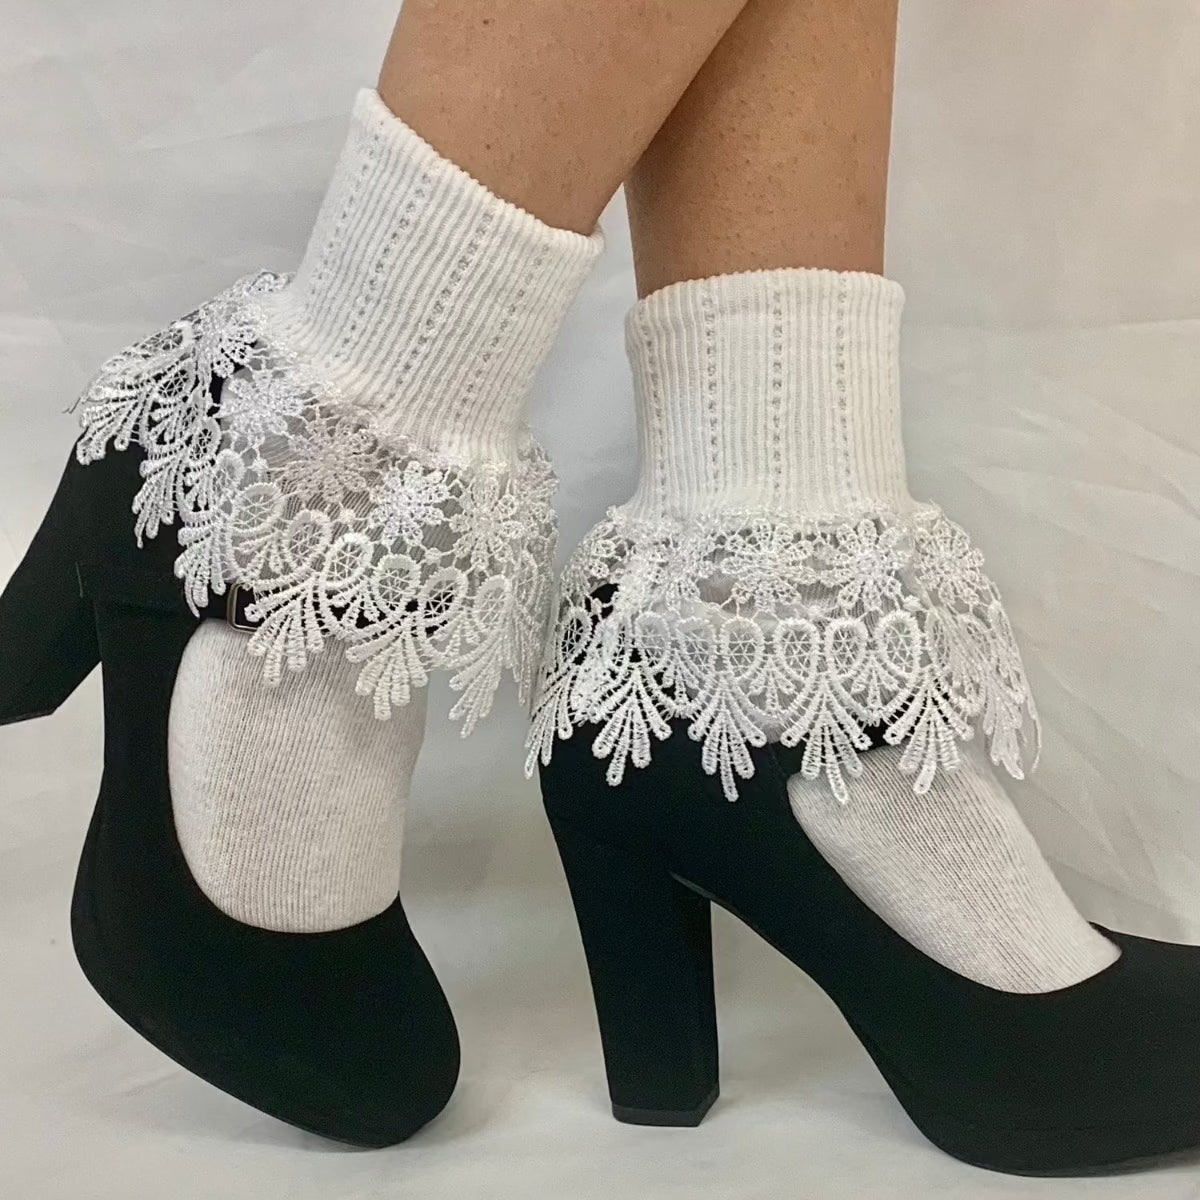 SIGNATURE lace cuff socks - white